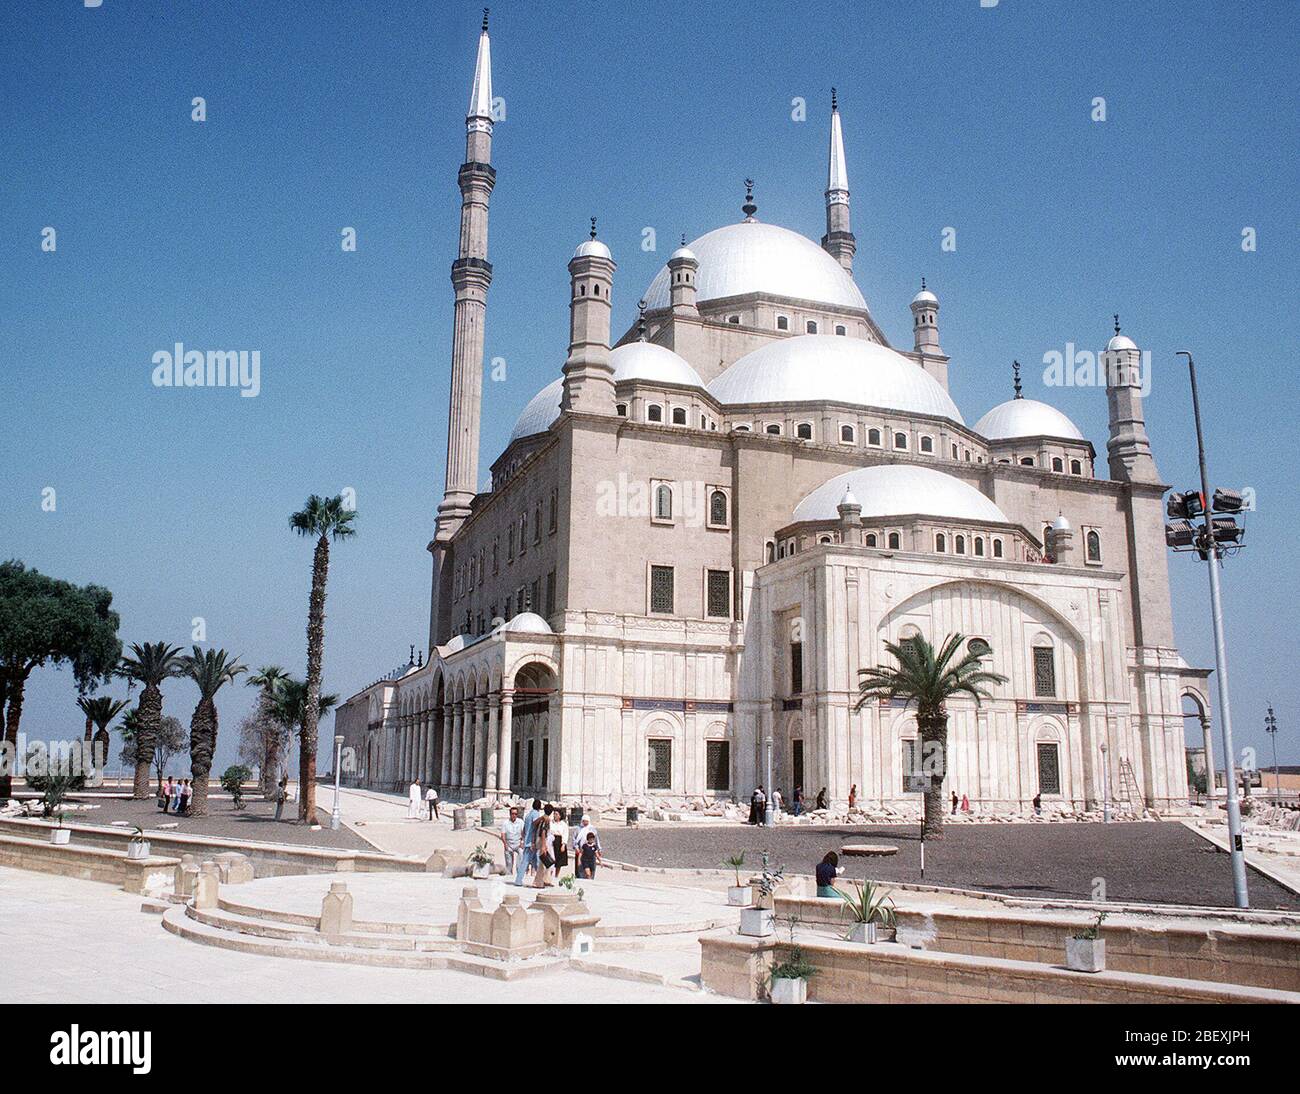 Die Moschee des Mohammed Ali auf der Zitadelle von Kairo Kairo 1848 AD in der Innenstadt von Kairo gebaut. Genaue Datum schossen Unbekannte (Metadaten, 1983), während die caption Unbekannt sagt) Stockfoto